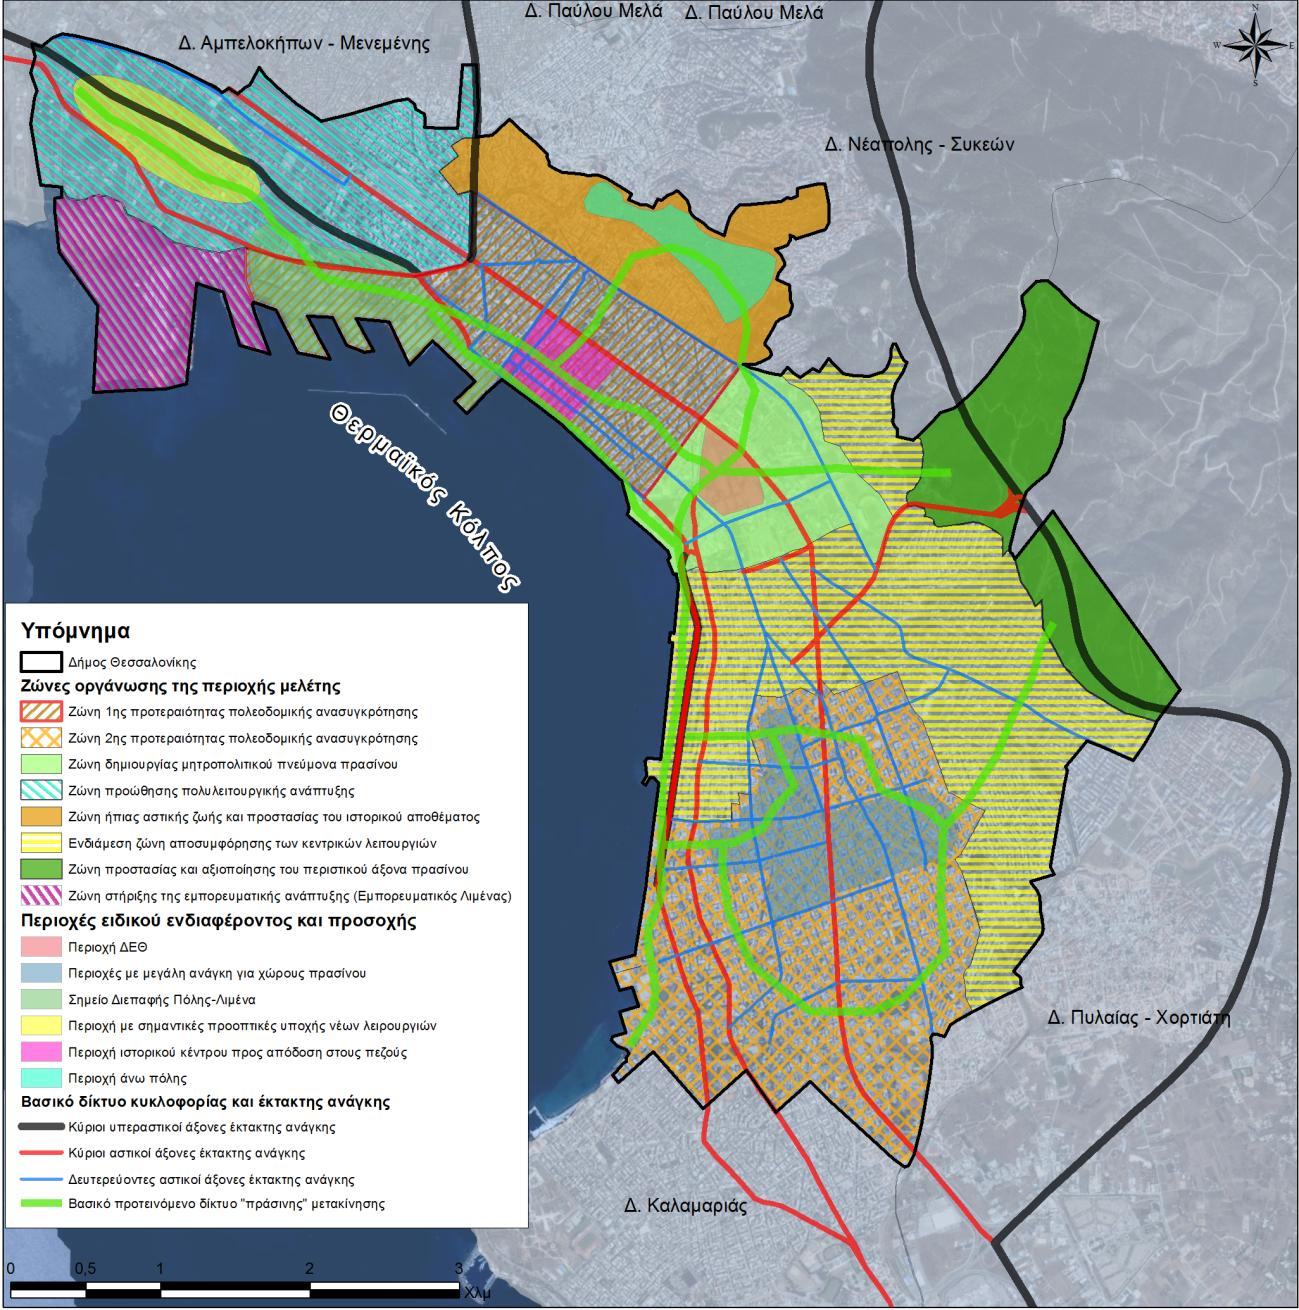 Εικόνα 4.6 (Απόσπασμα χάρτη 4.2): Δομικό σχέδιο χωρικής οργάνωσης για τον Δήμο Θεσσαλονίκης.